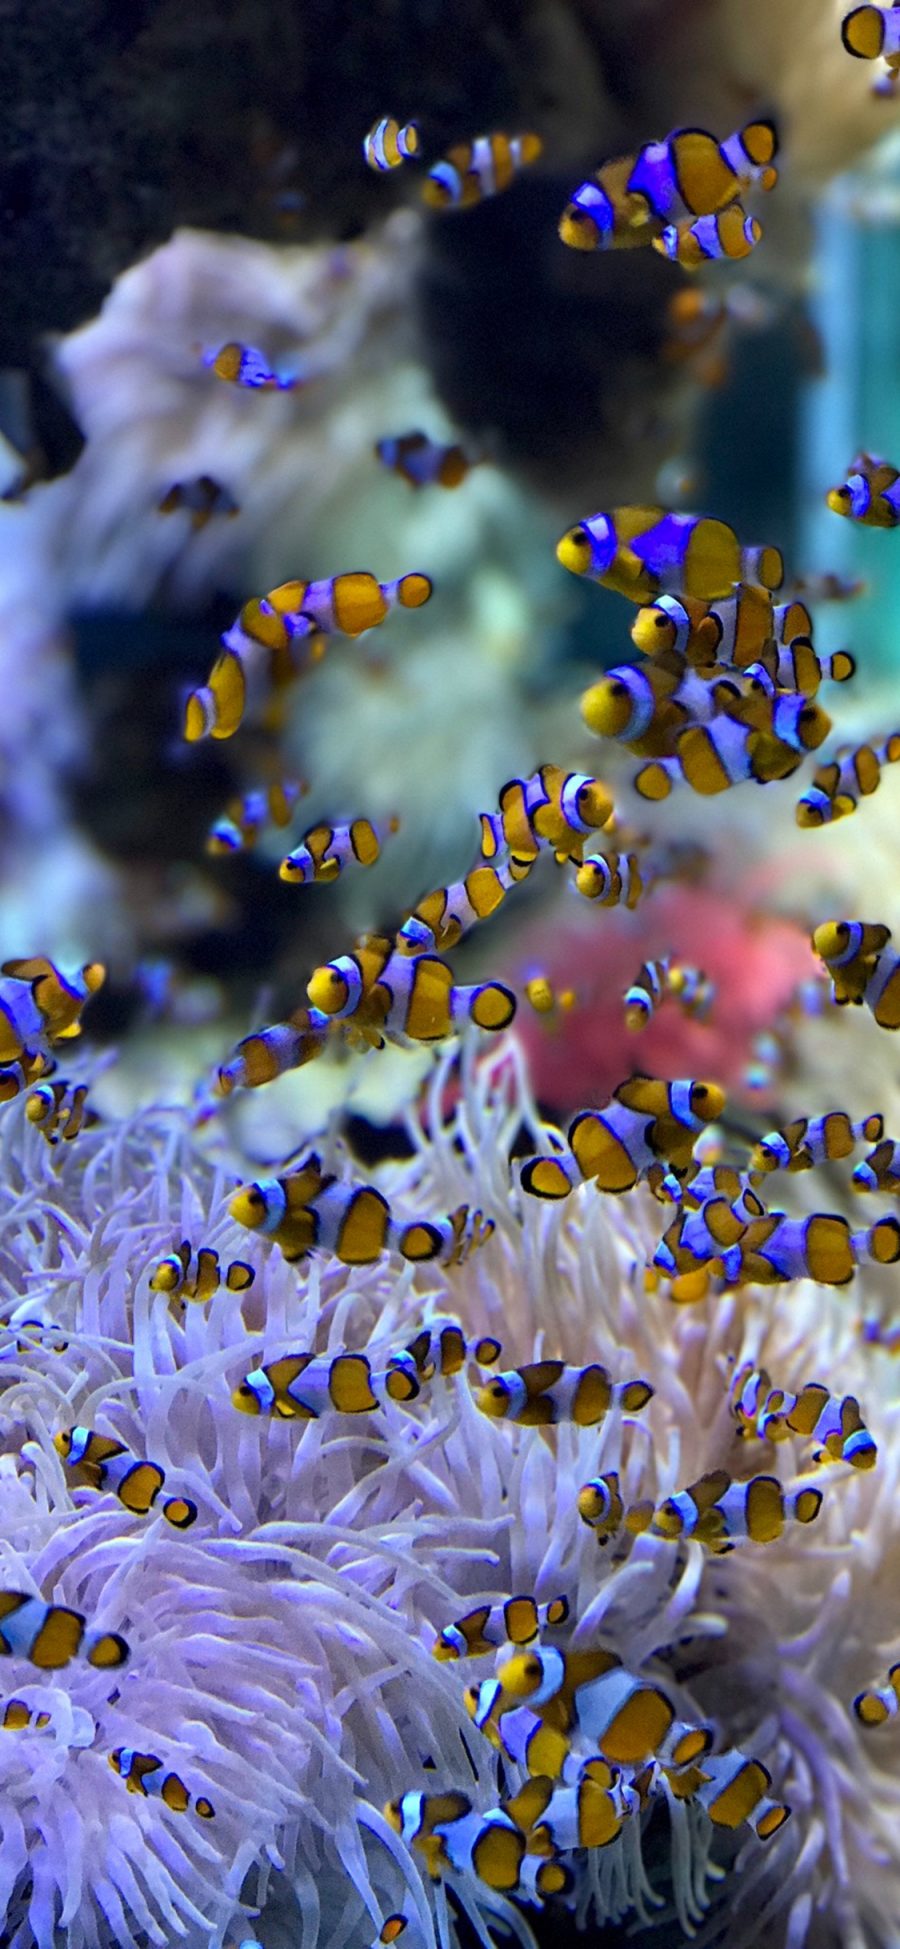 [2436×1125]鱼群 珊瑚虫 热带 小丑鱼 苹果手机壁纸图片